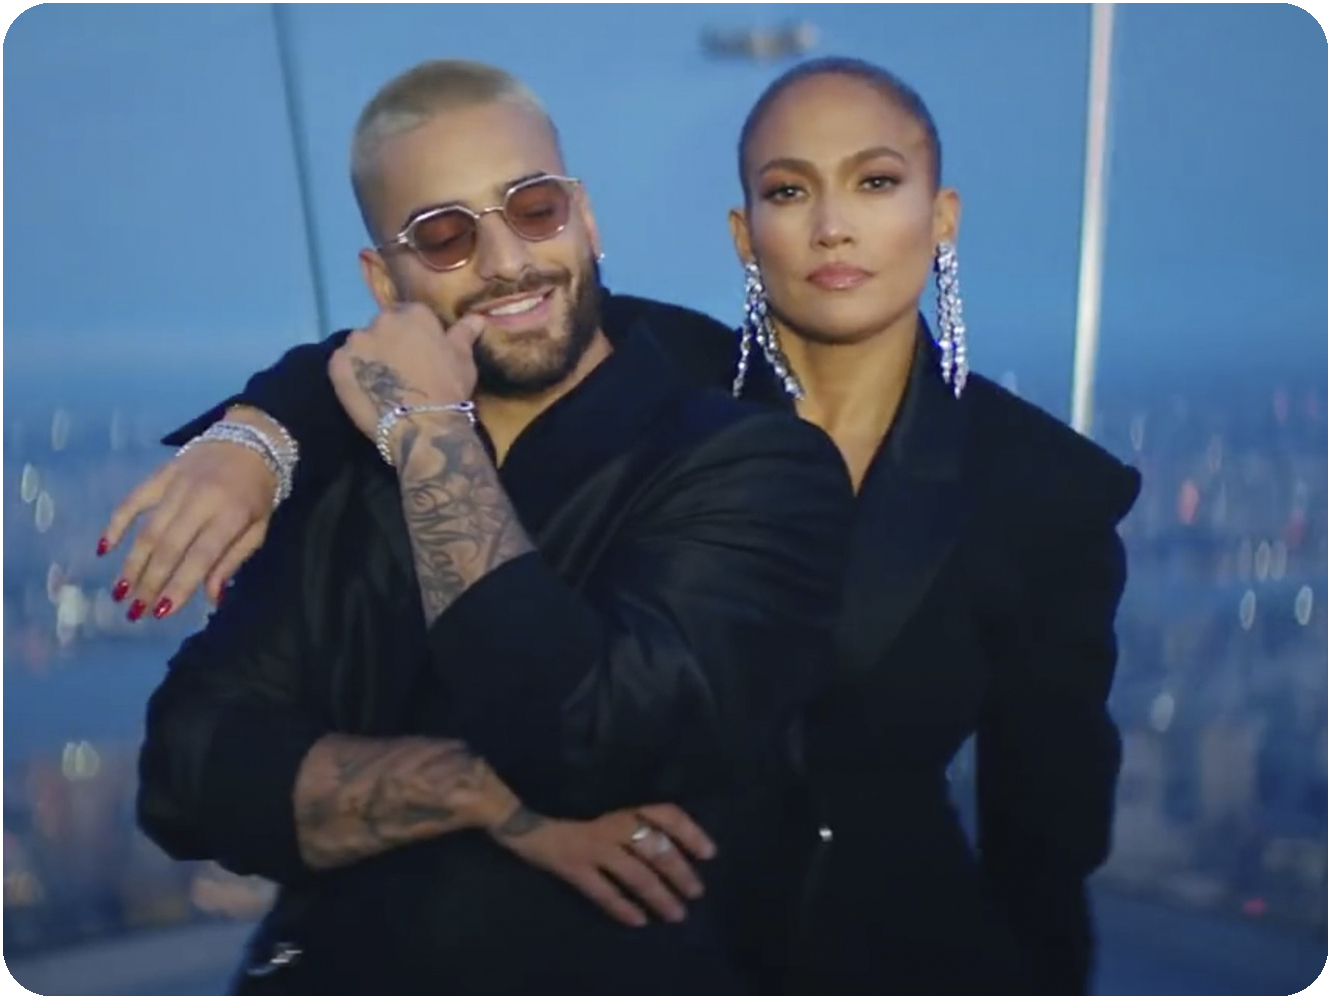  Maluma y Jennifer Lopez se acercan al estilo del otro en ‘Pa’ Ti’ y ‘Lonely’, dos nuevos singles